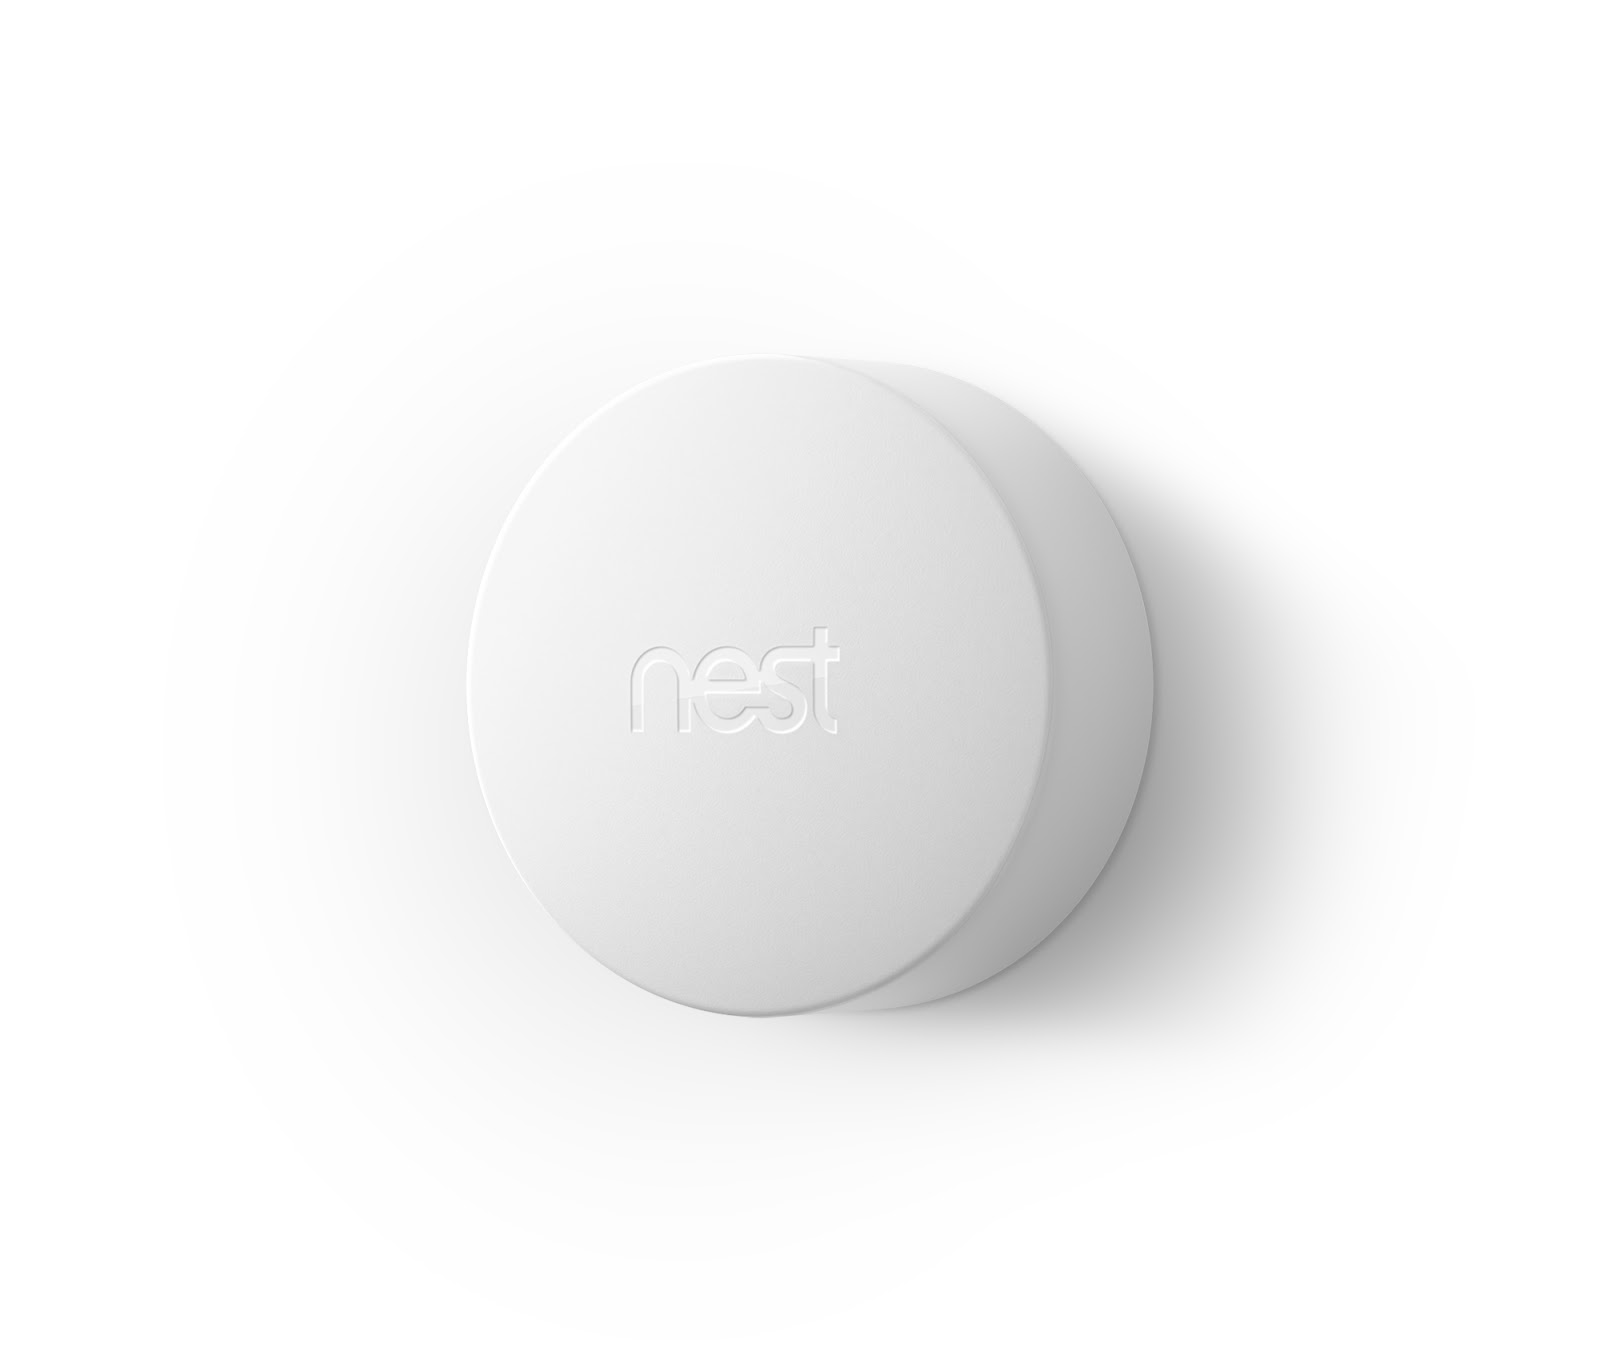 Nest temperature sensor hero